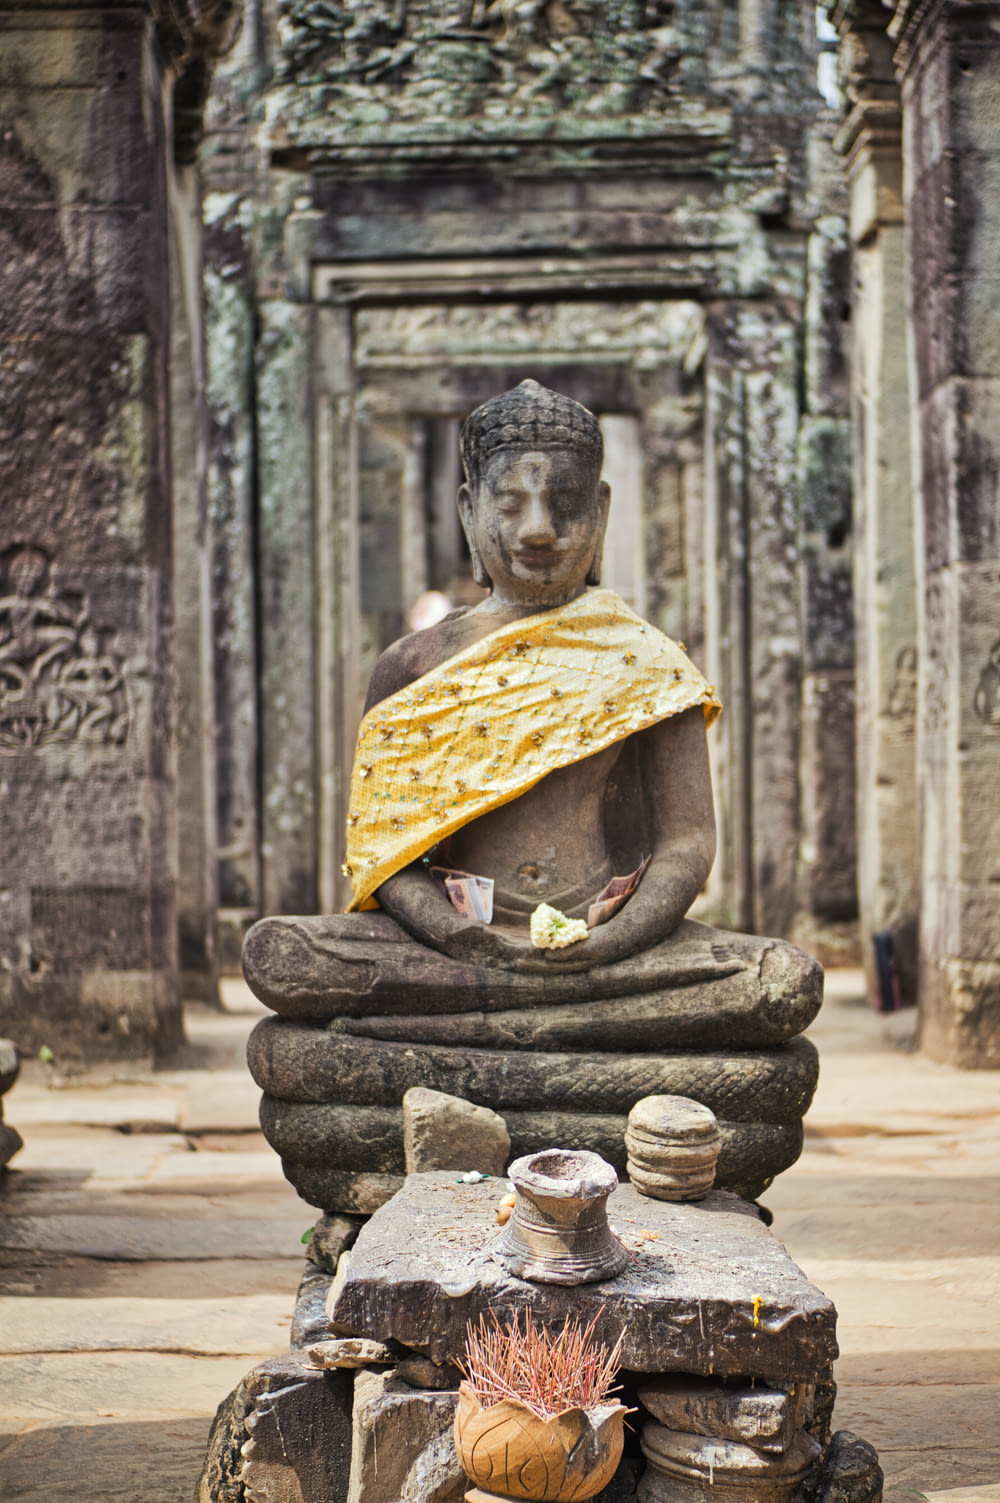 sitting Buddha statue during daytime